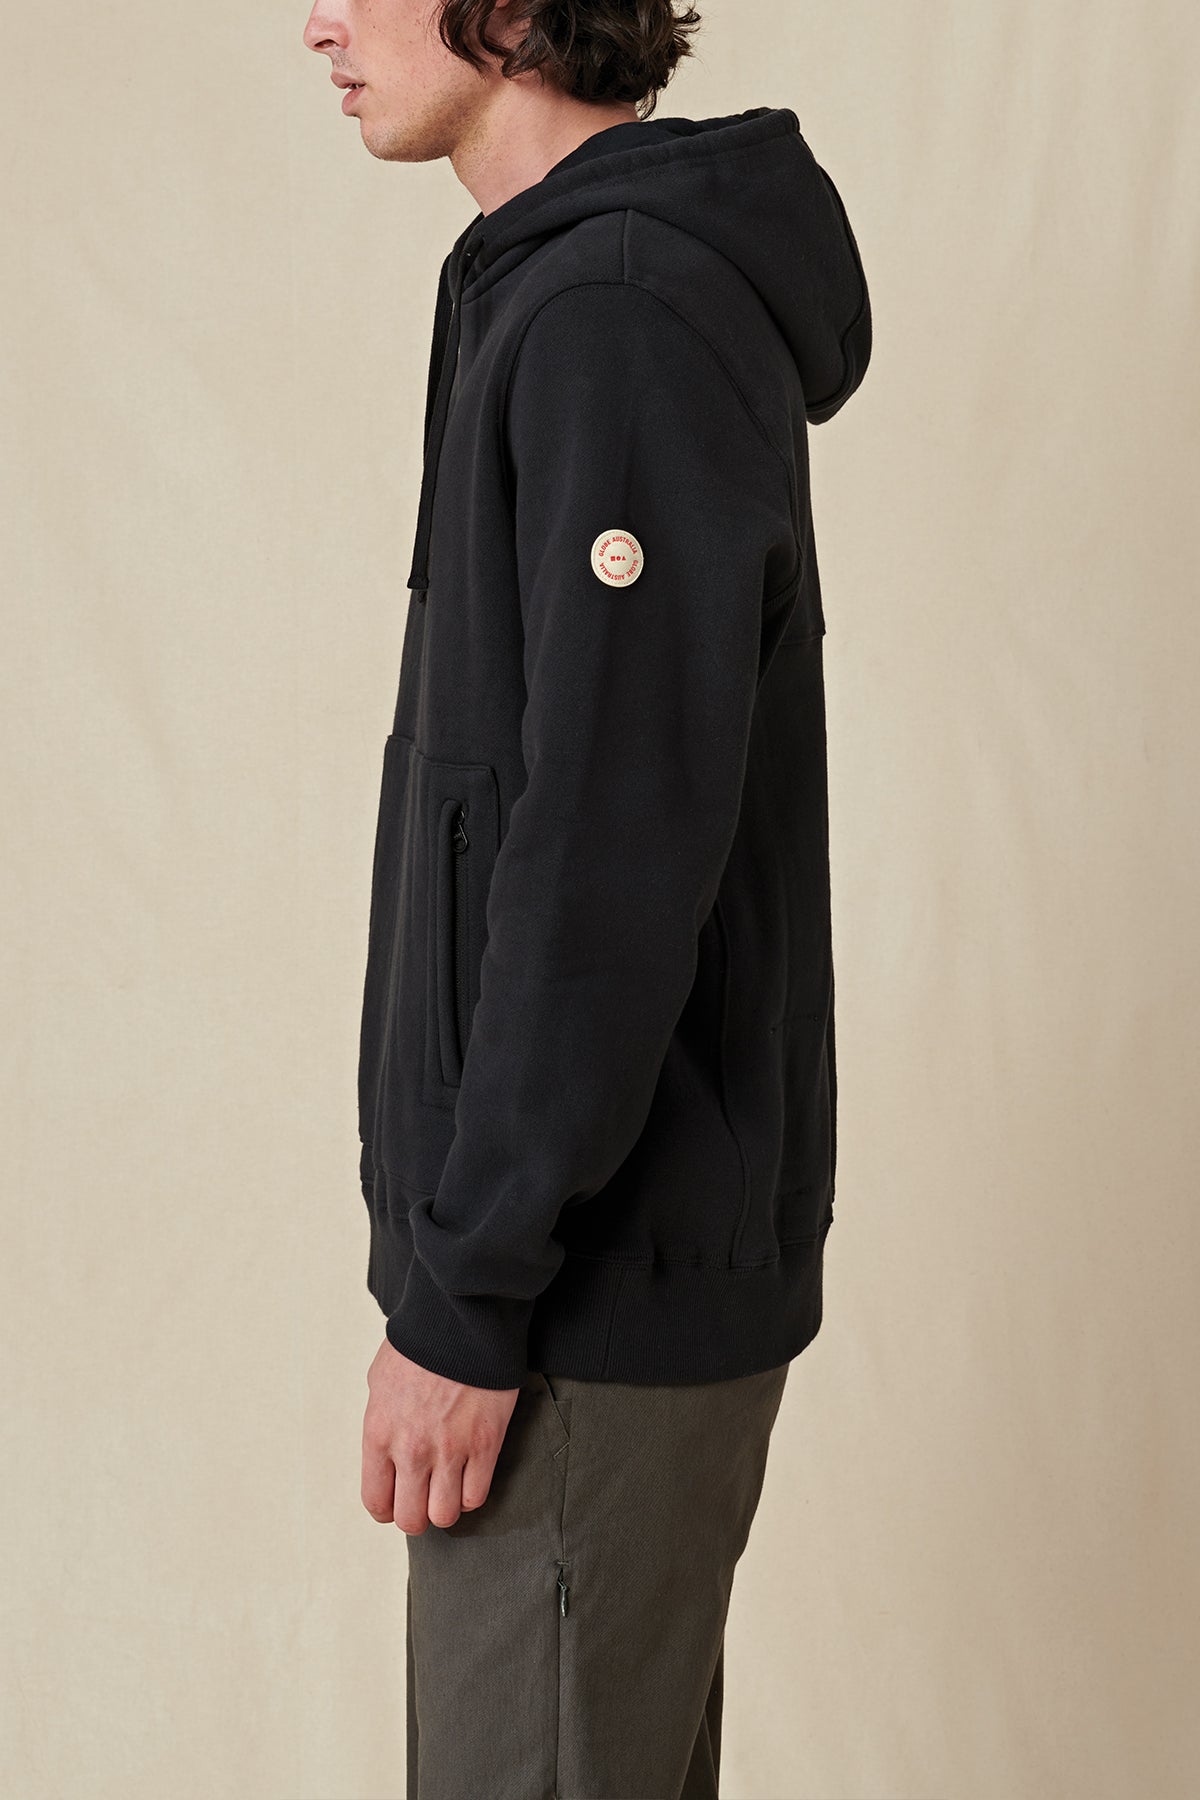 side profile of Black Globe hoodie